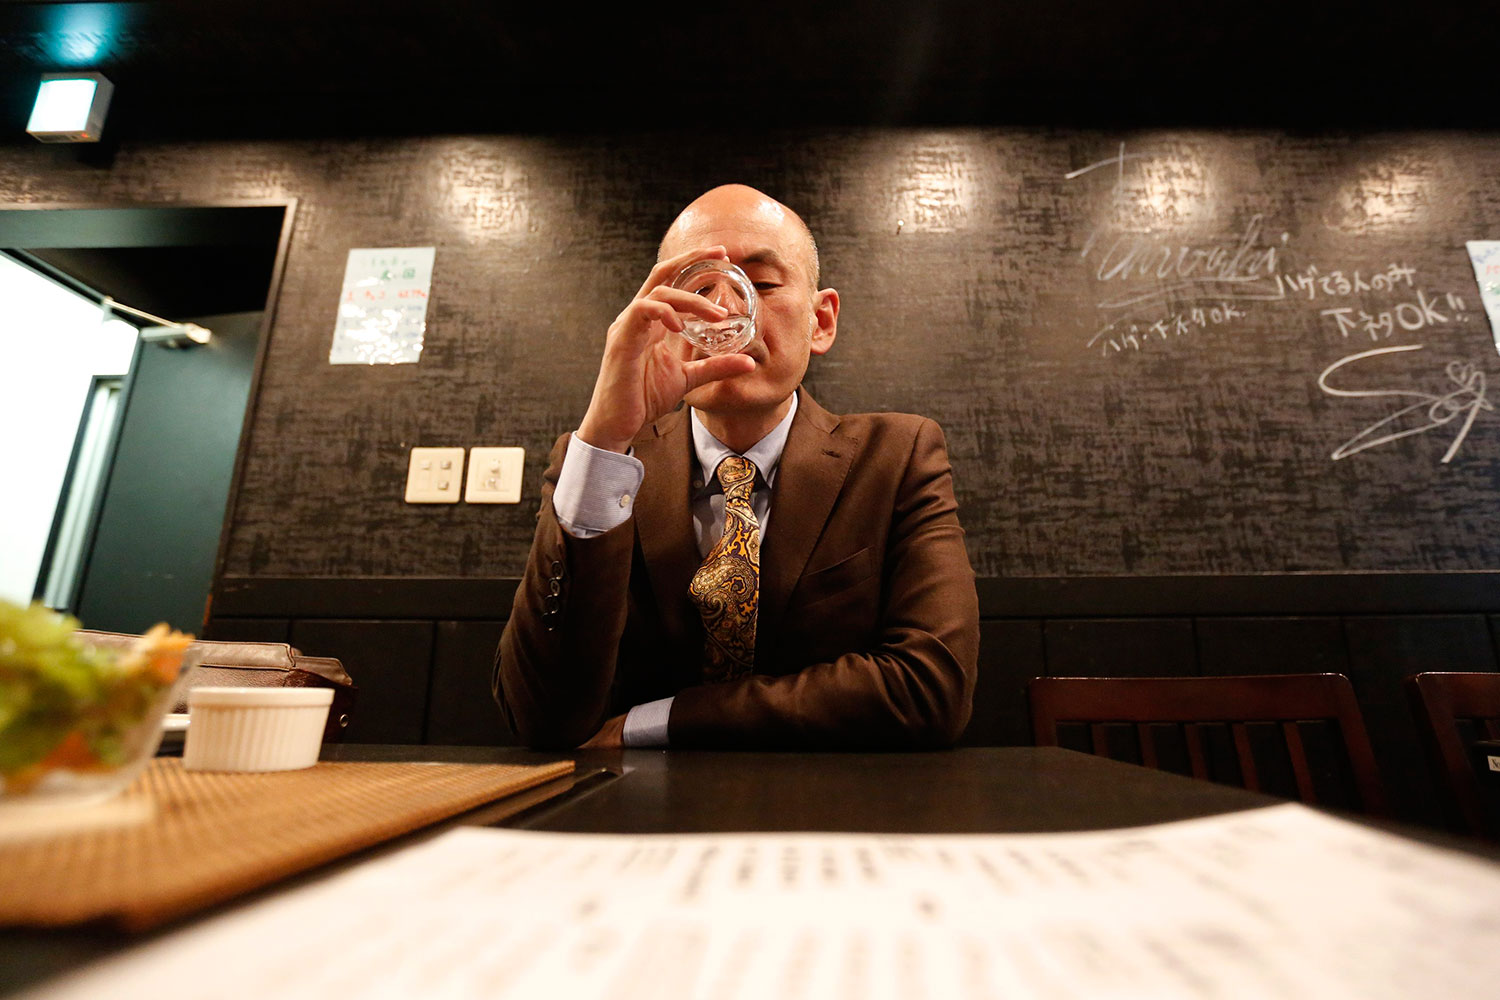 Un bar de Tokio premia con descuentos a sus clientes calvos